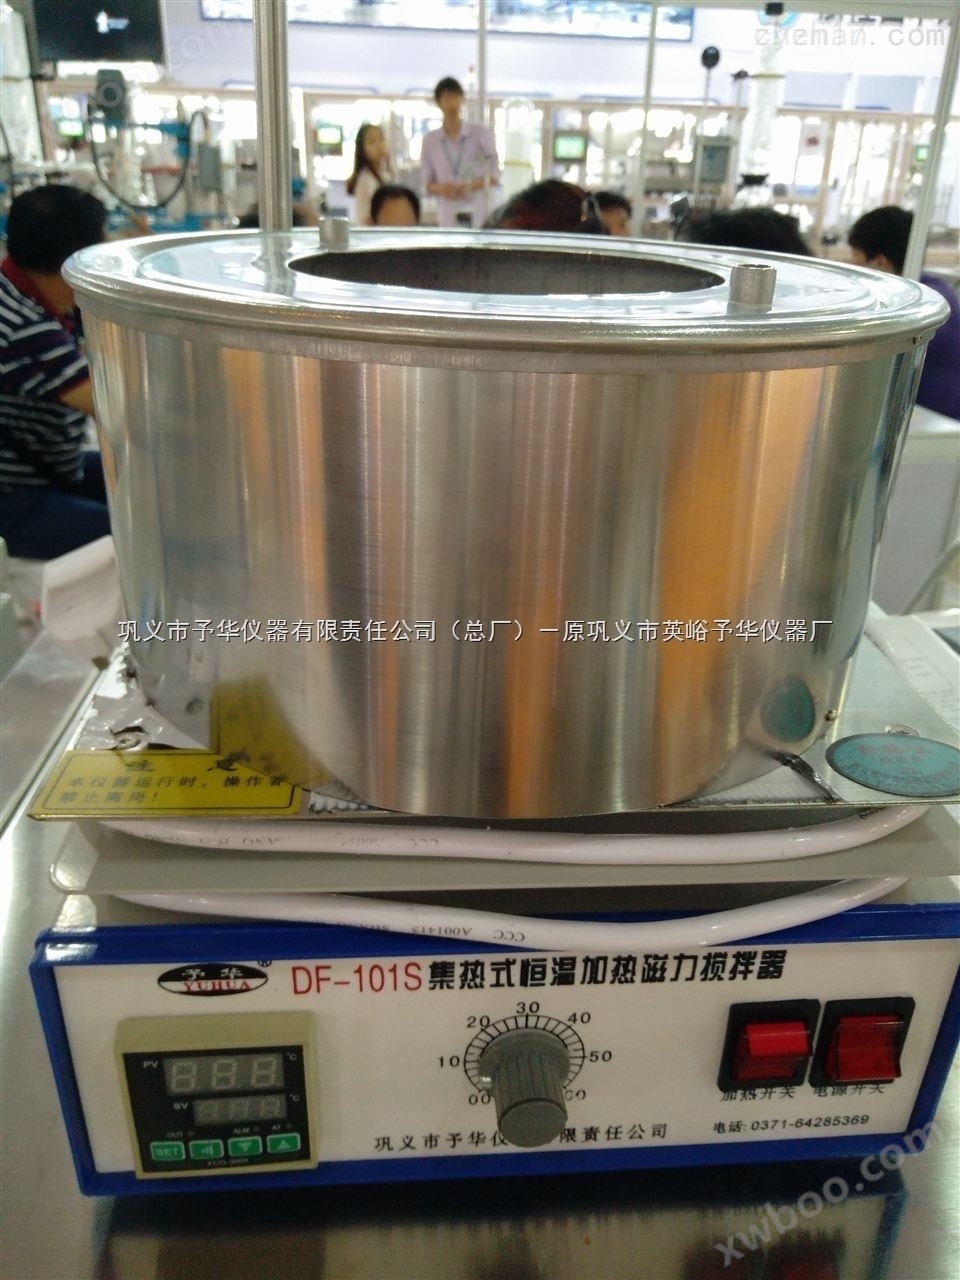 巩义予华DF-101S-2000ml集热式磁力搅拌器生产厂家/集热式磁力搅拌器技术参数